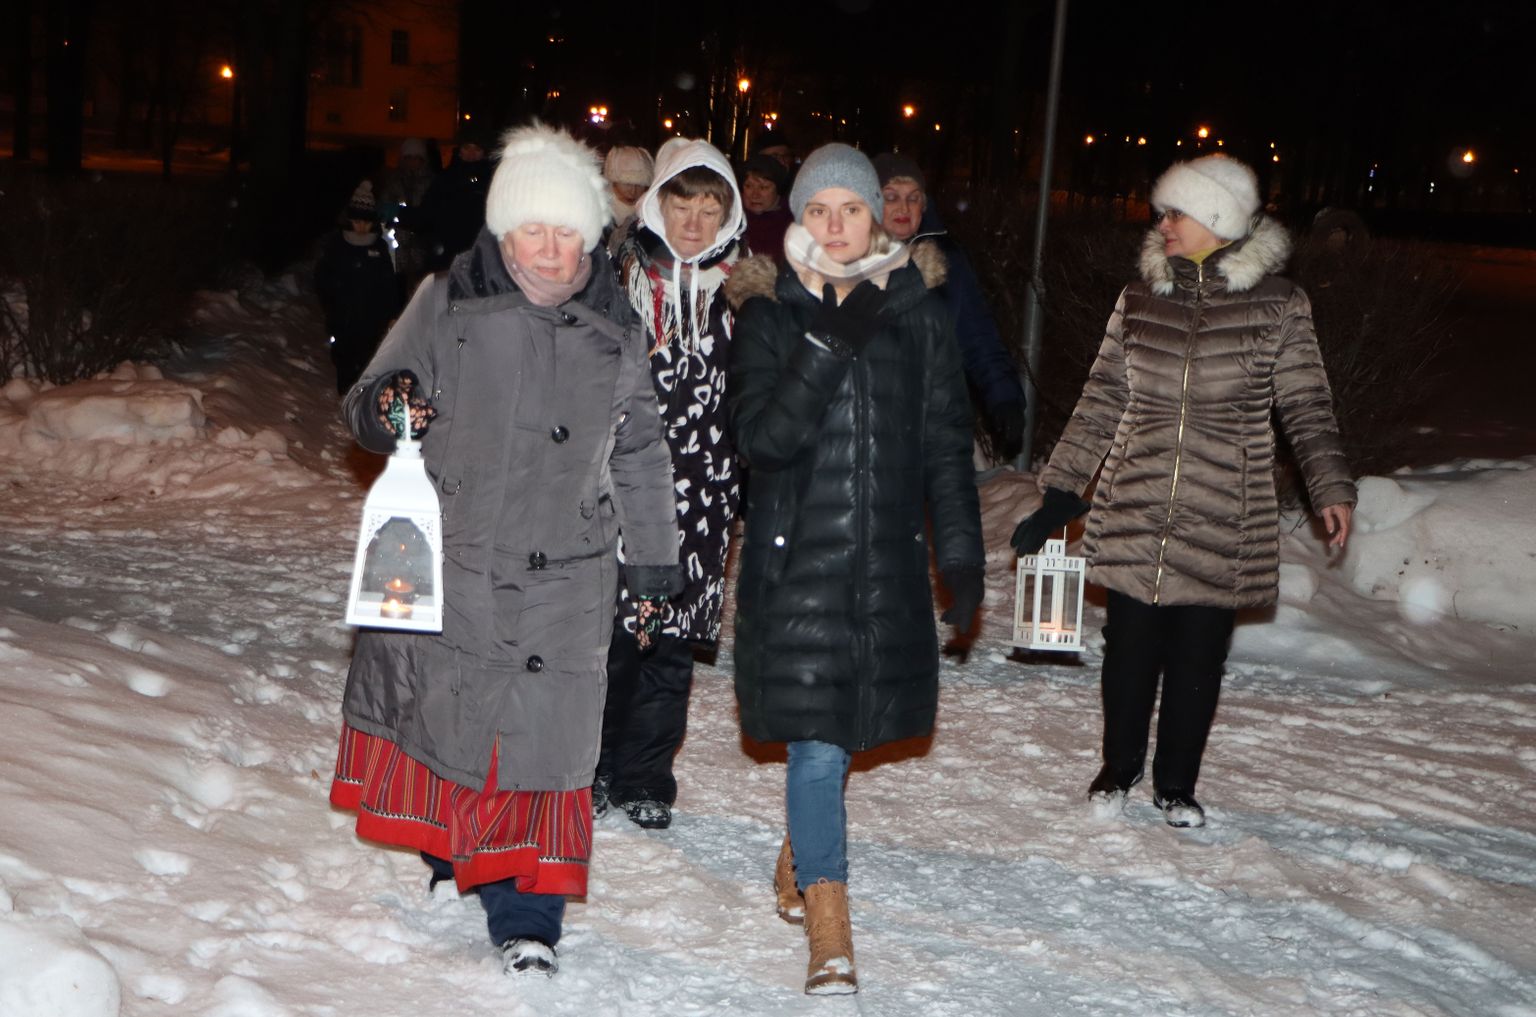 Õhtune jalutuskäik mööda talviseid pargiteid pakkus linnaelanikele rohkelt äratundmisrõõmu.